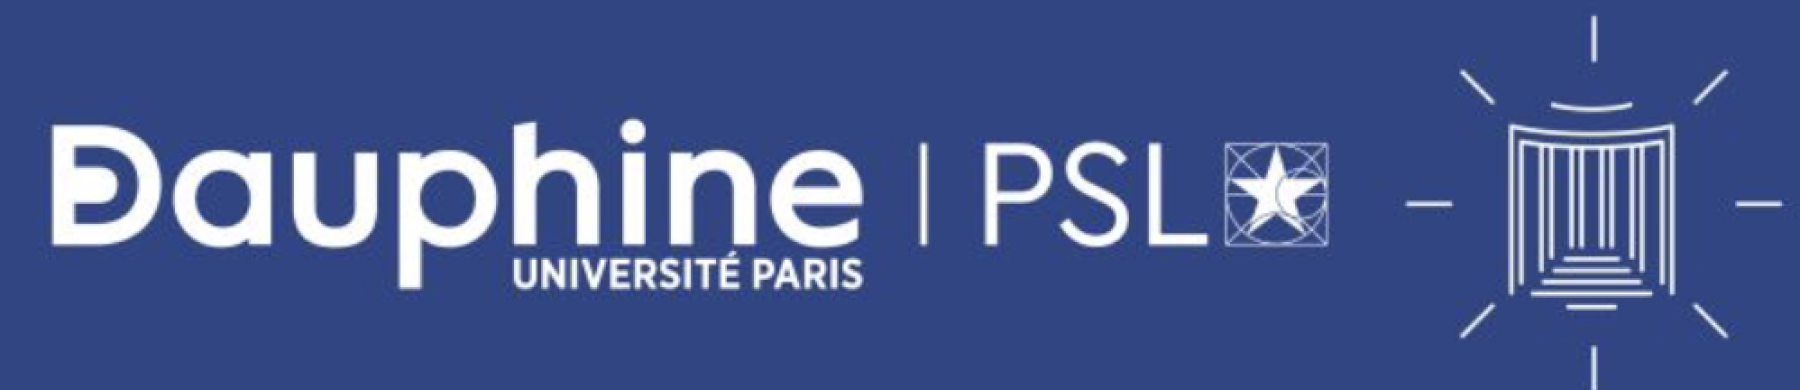 Université Paris Dauphine- PSL